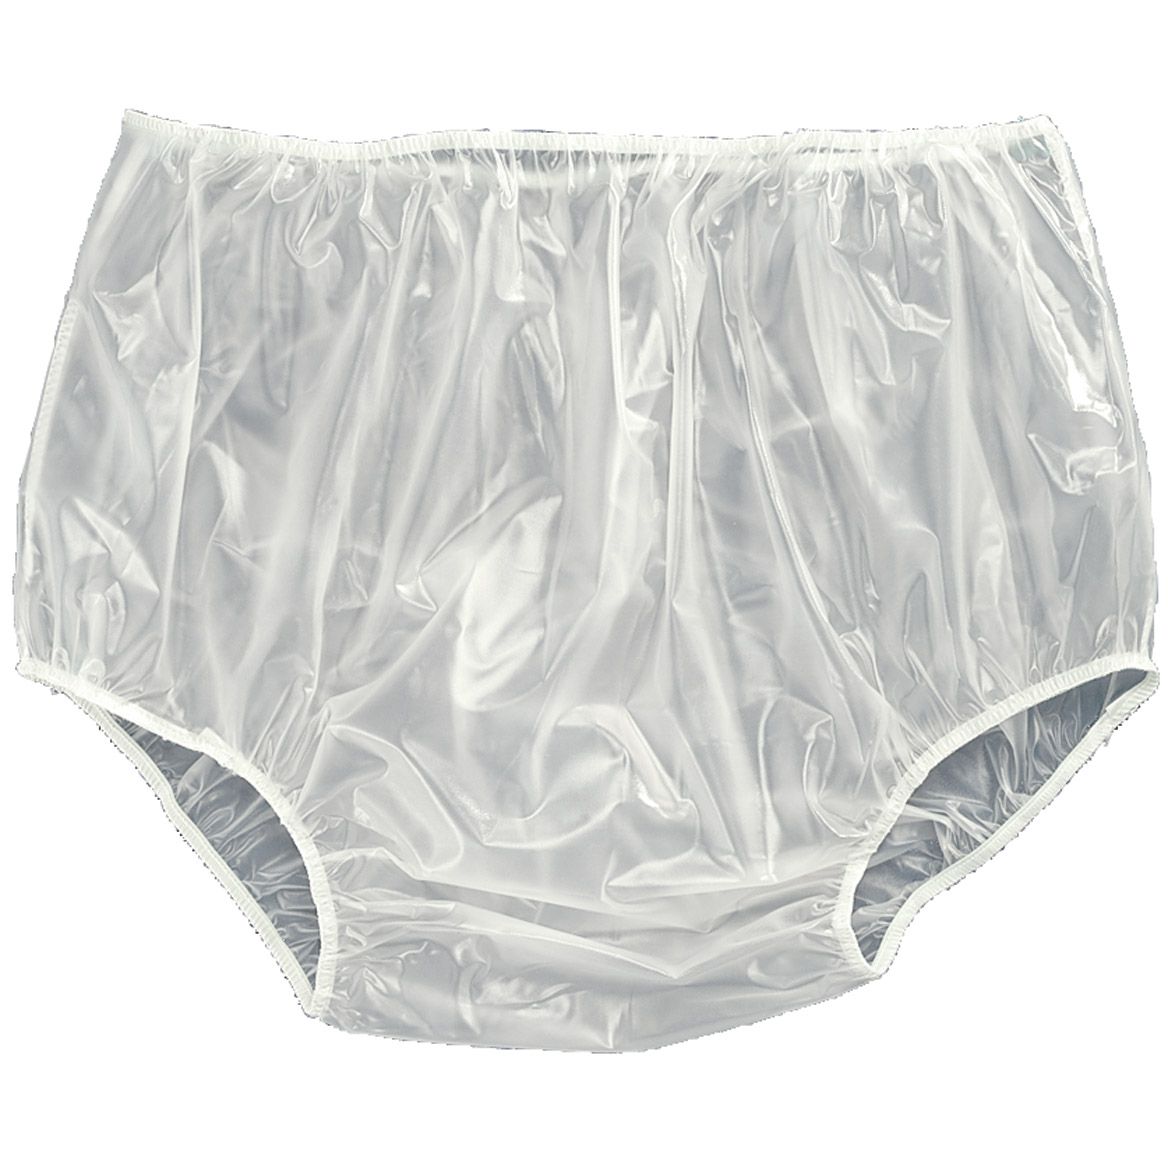 Waterproof Underwear For Women